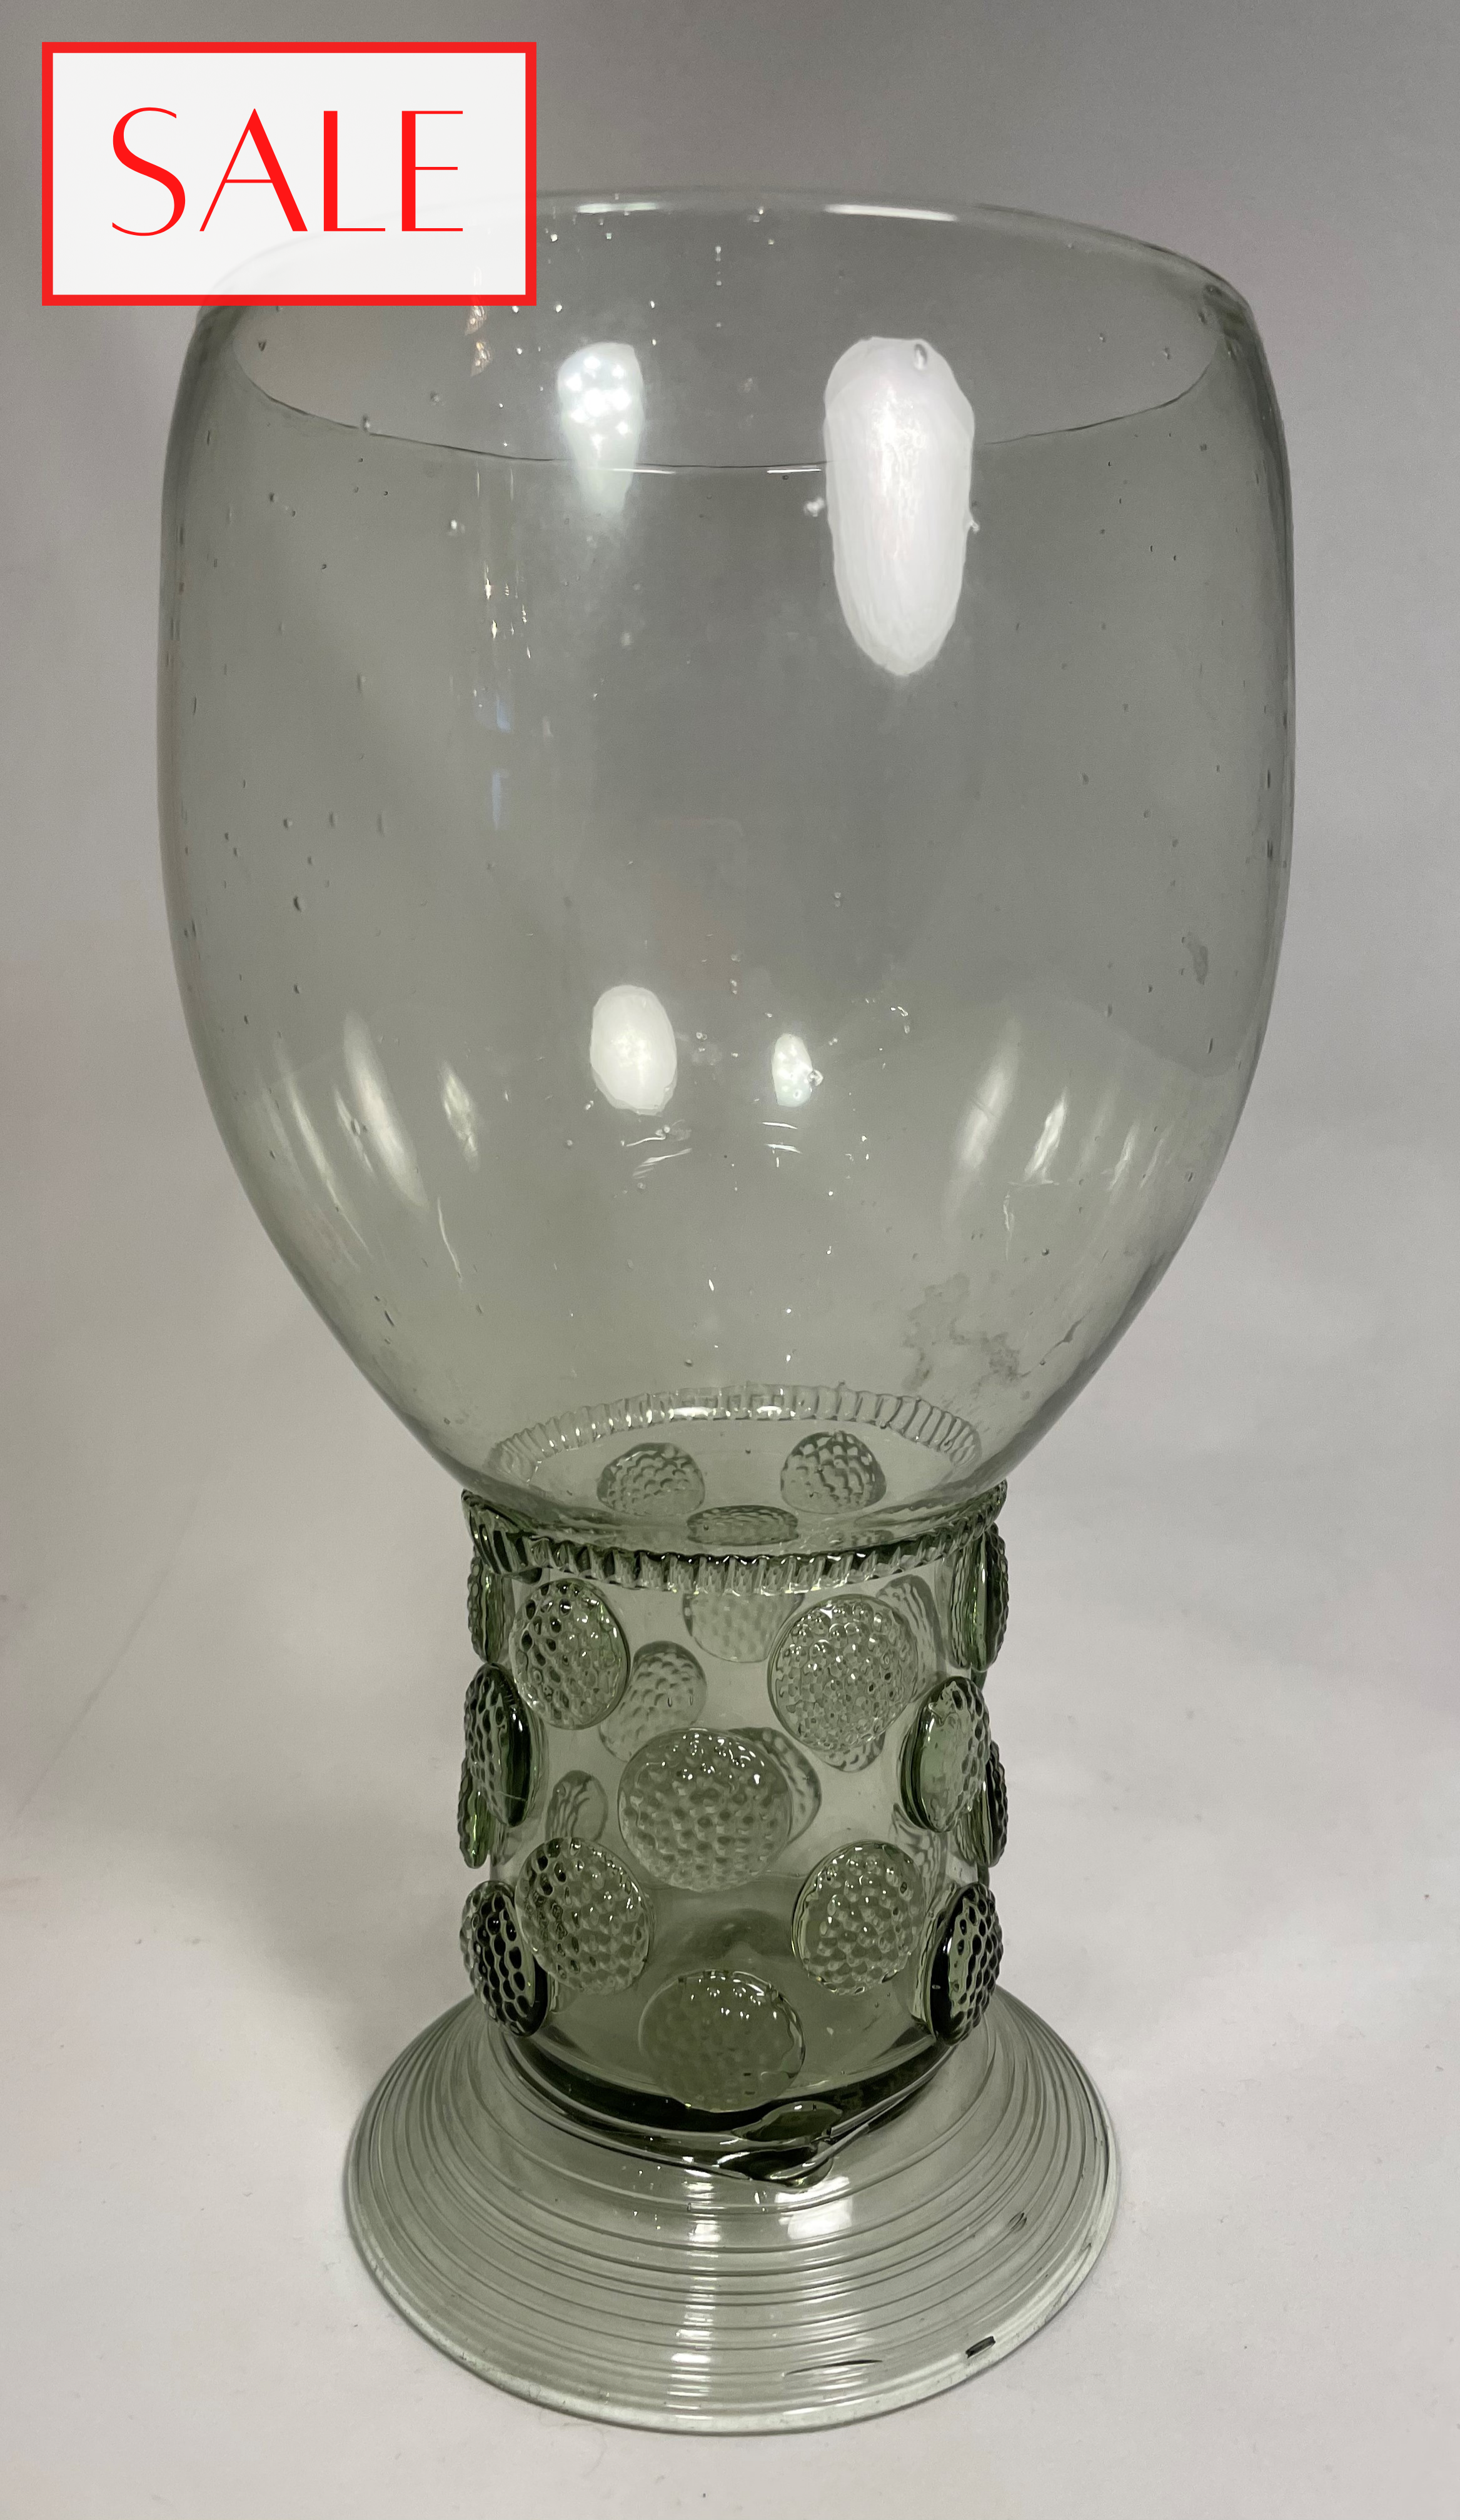 XL Roemer glass, style. XL Roemer antieke stijl. Online shop